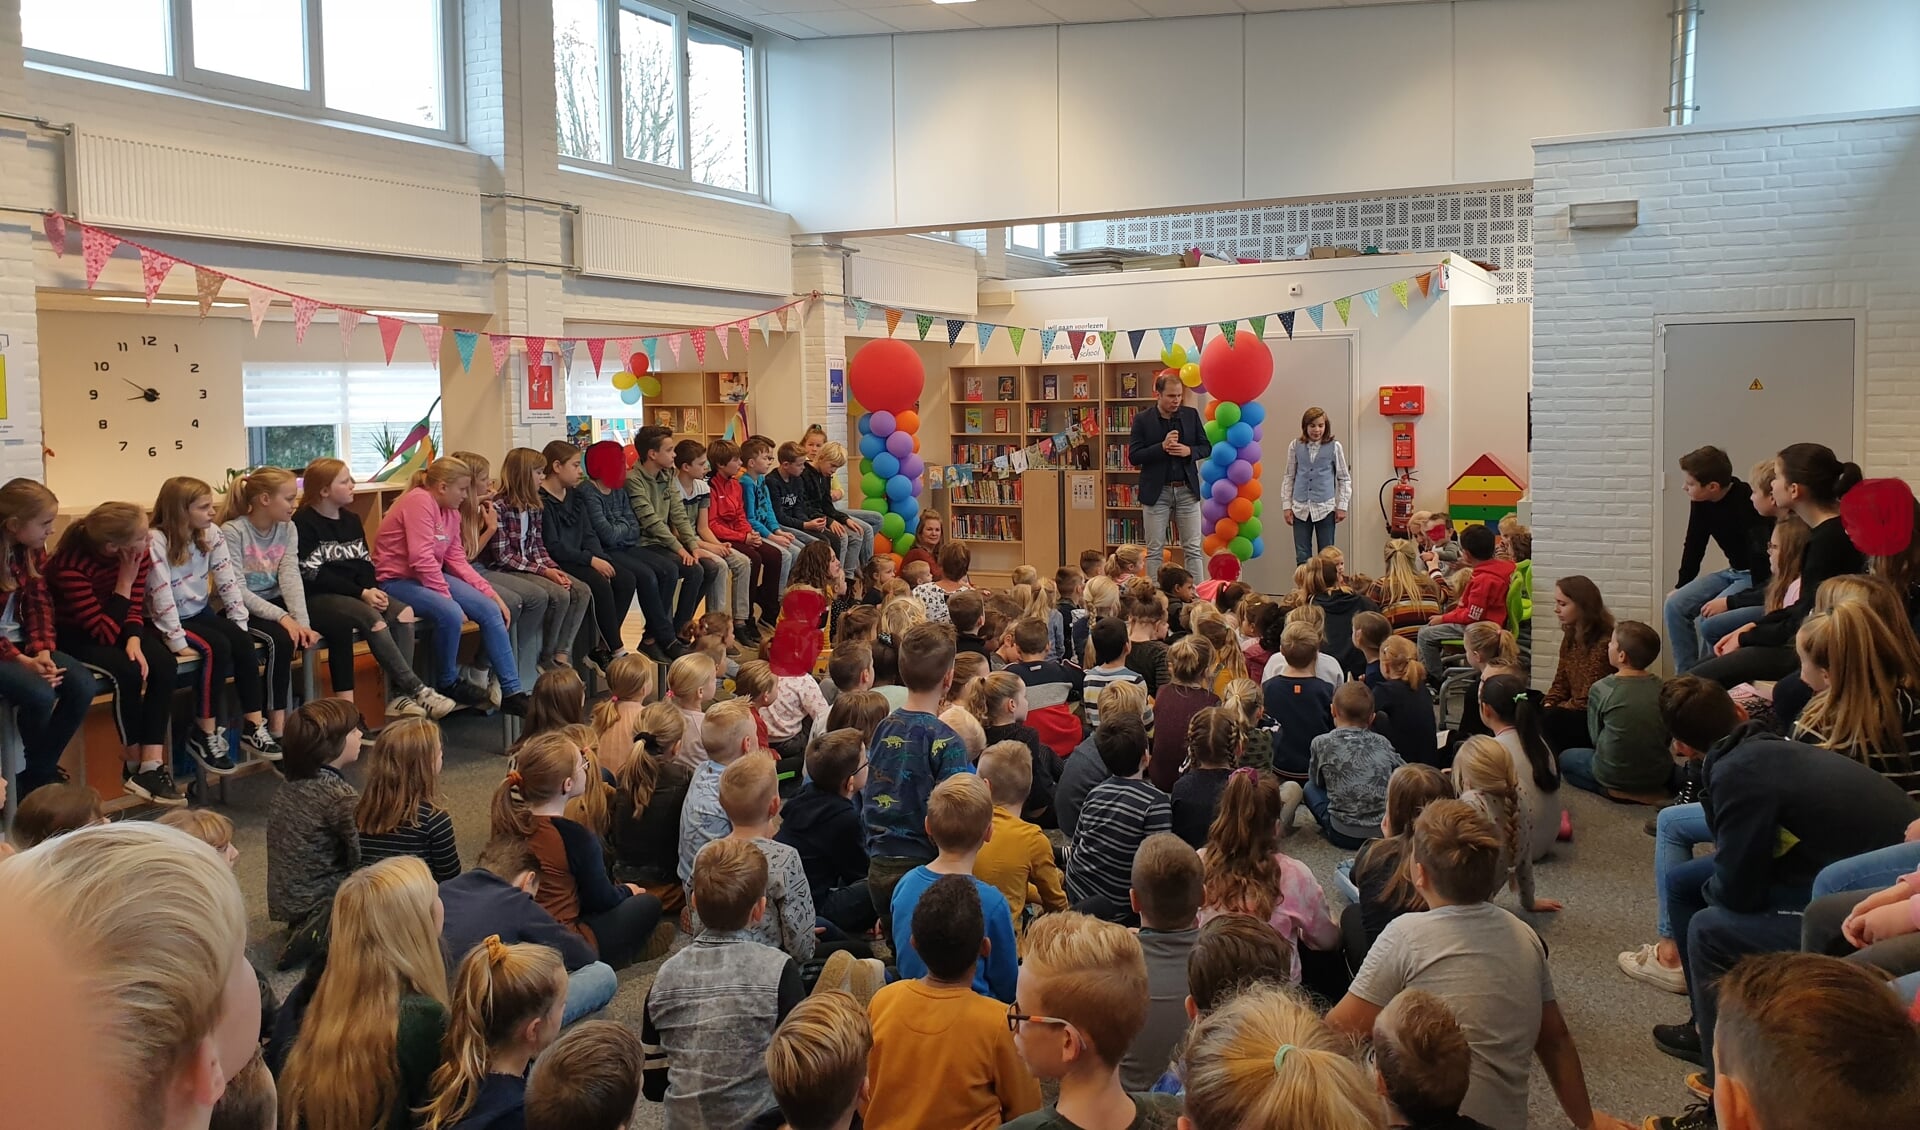 De schoolbinliotheek op IKC UnieK wordt feestelijk geopend. Foto: PR